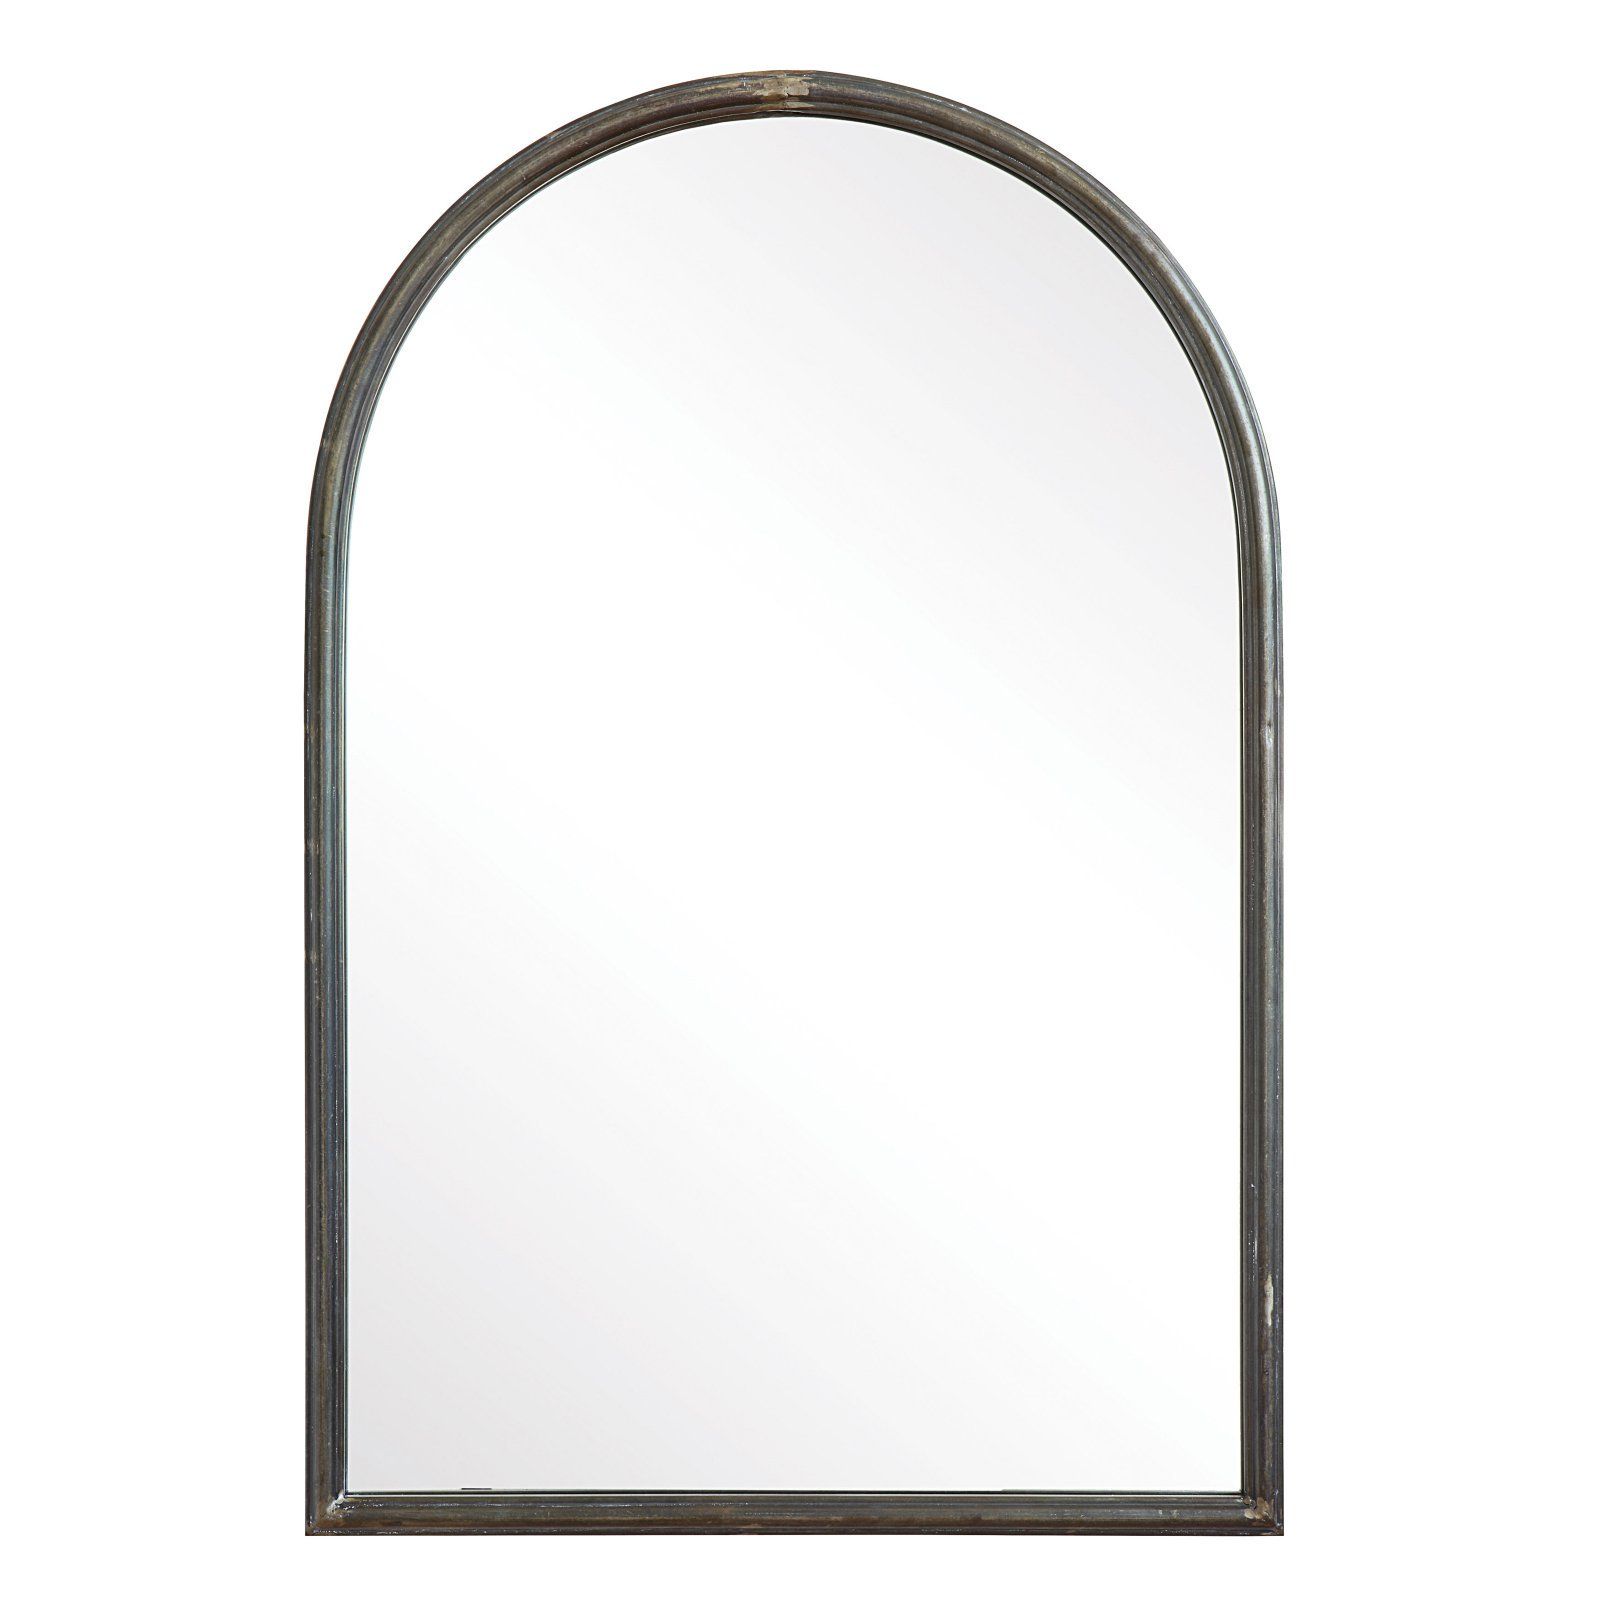 3R Studios Arched Wall Mirror - 24W x 36H in. | Walmart (US)